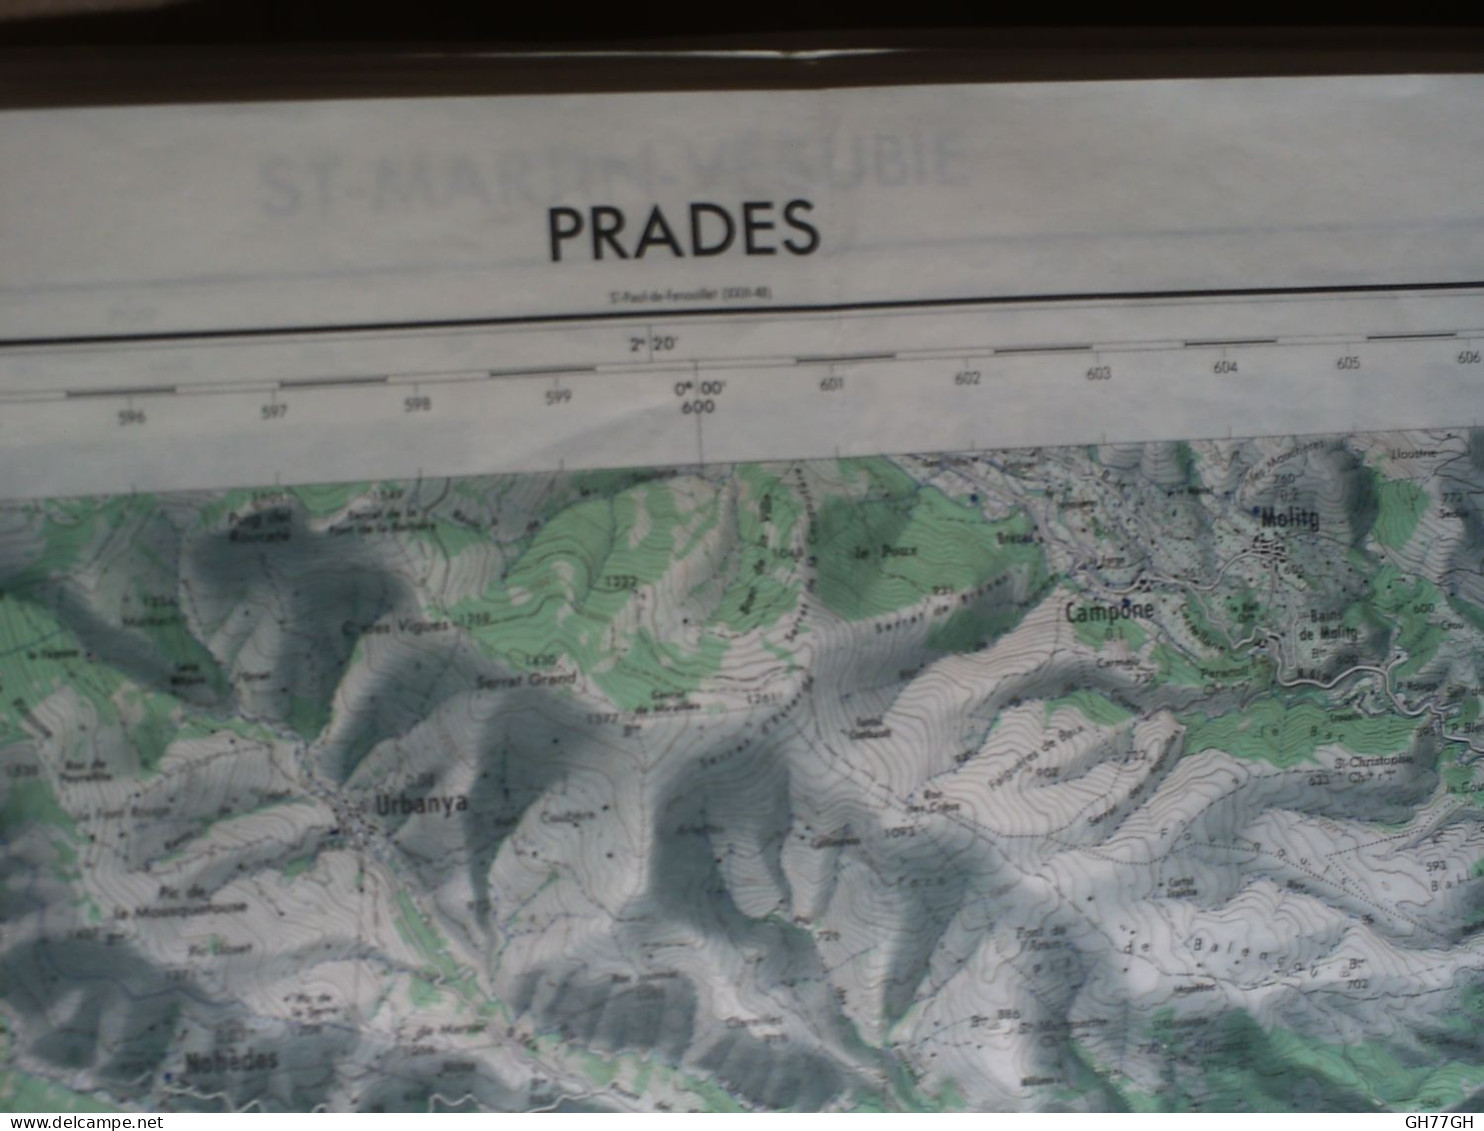 CARTE IGN PRADES (PYRENEES-ORIENTALES) 1/50000ème -56x73cm -2cm=1km -mise à Jour De 1963 -IGN FRANCE - Cartes Topographiques